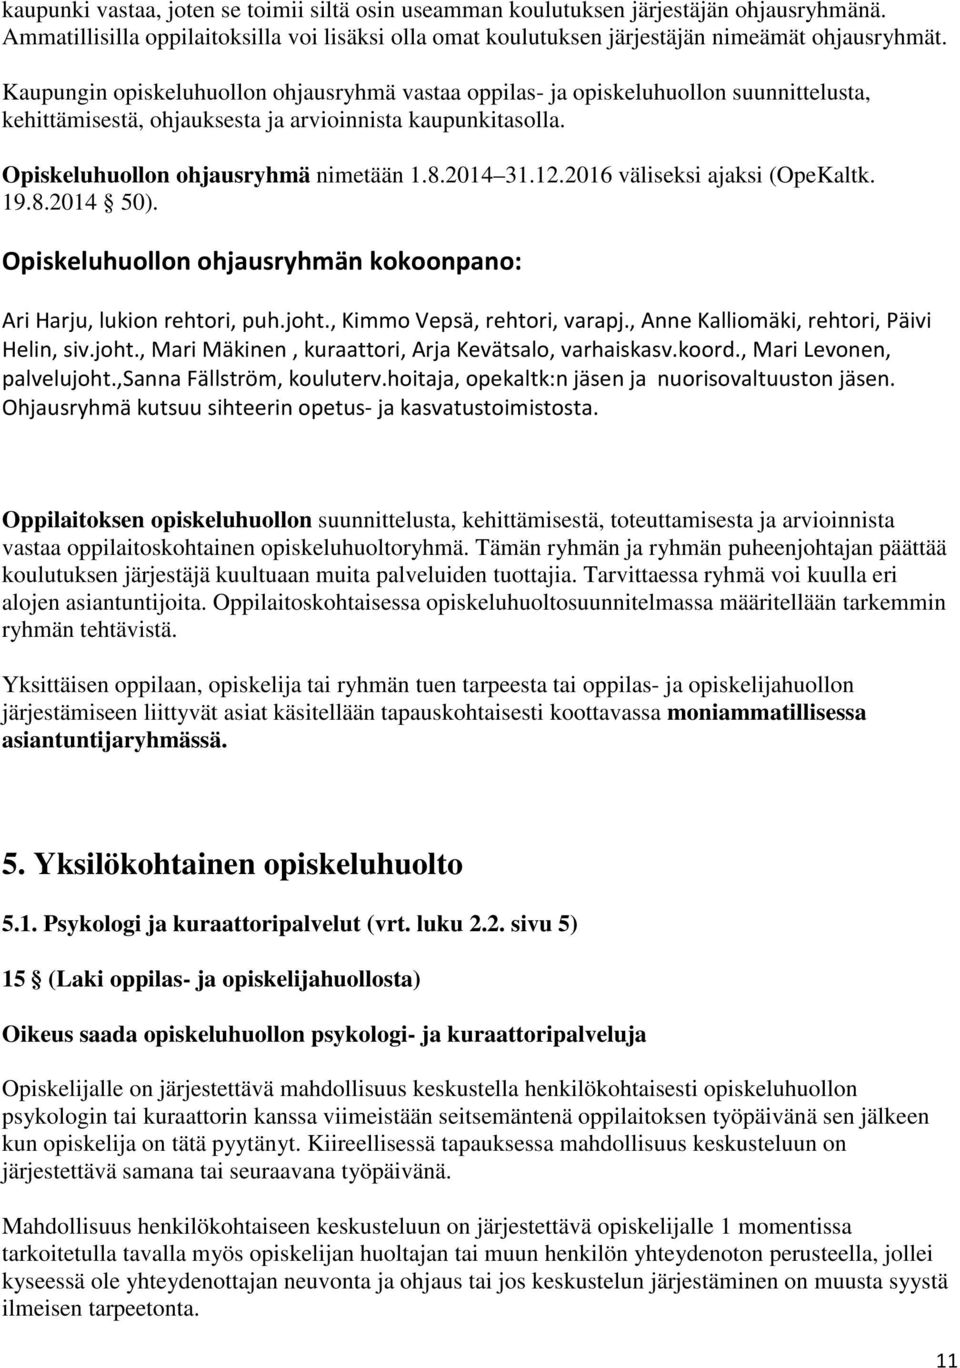 12.2016 väliseksi ajaksi (OpeKaltk. 19.8.2014 50). Opiskeluhuollon ohjausryhmän kokoonpano: Ari Harju, lukion rehtori, puh.joht., Kimmo Vepsä, rehtori, varapj.